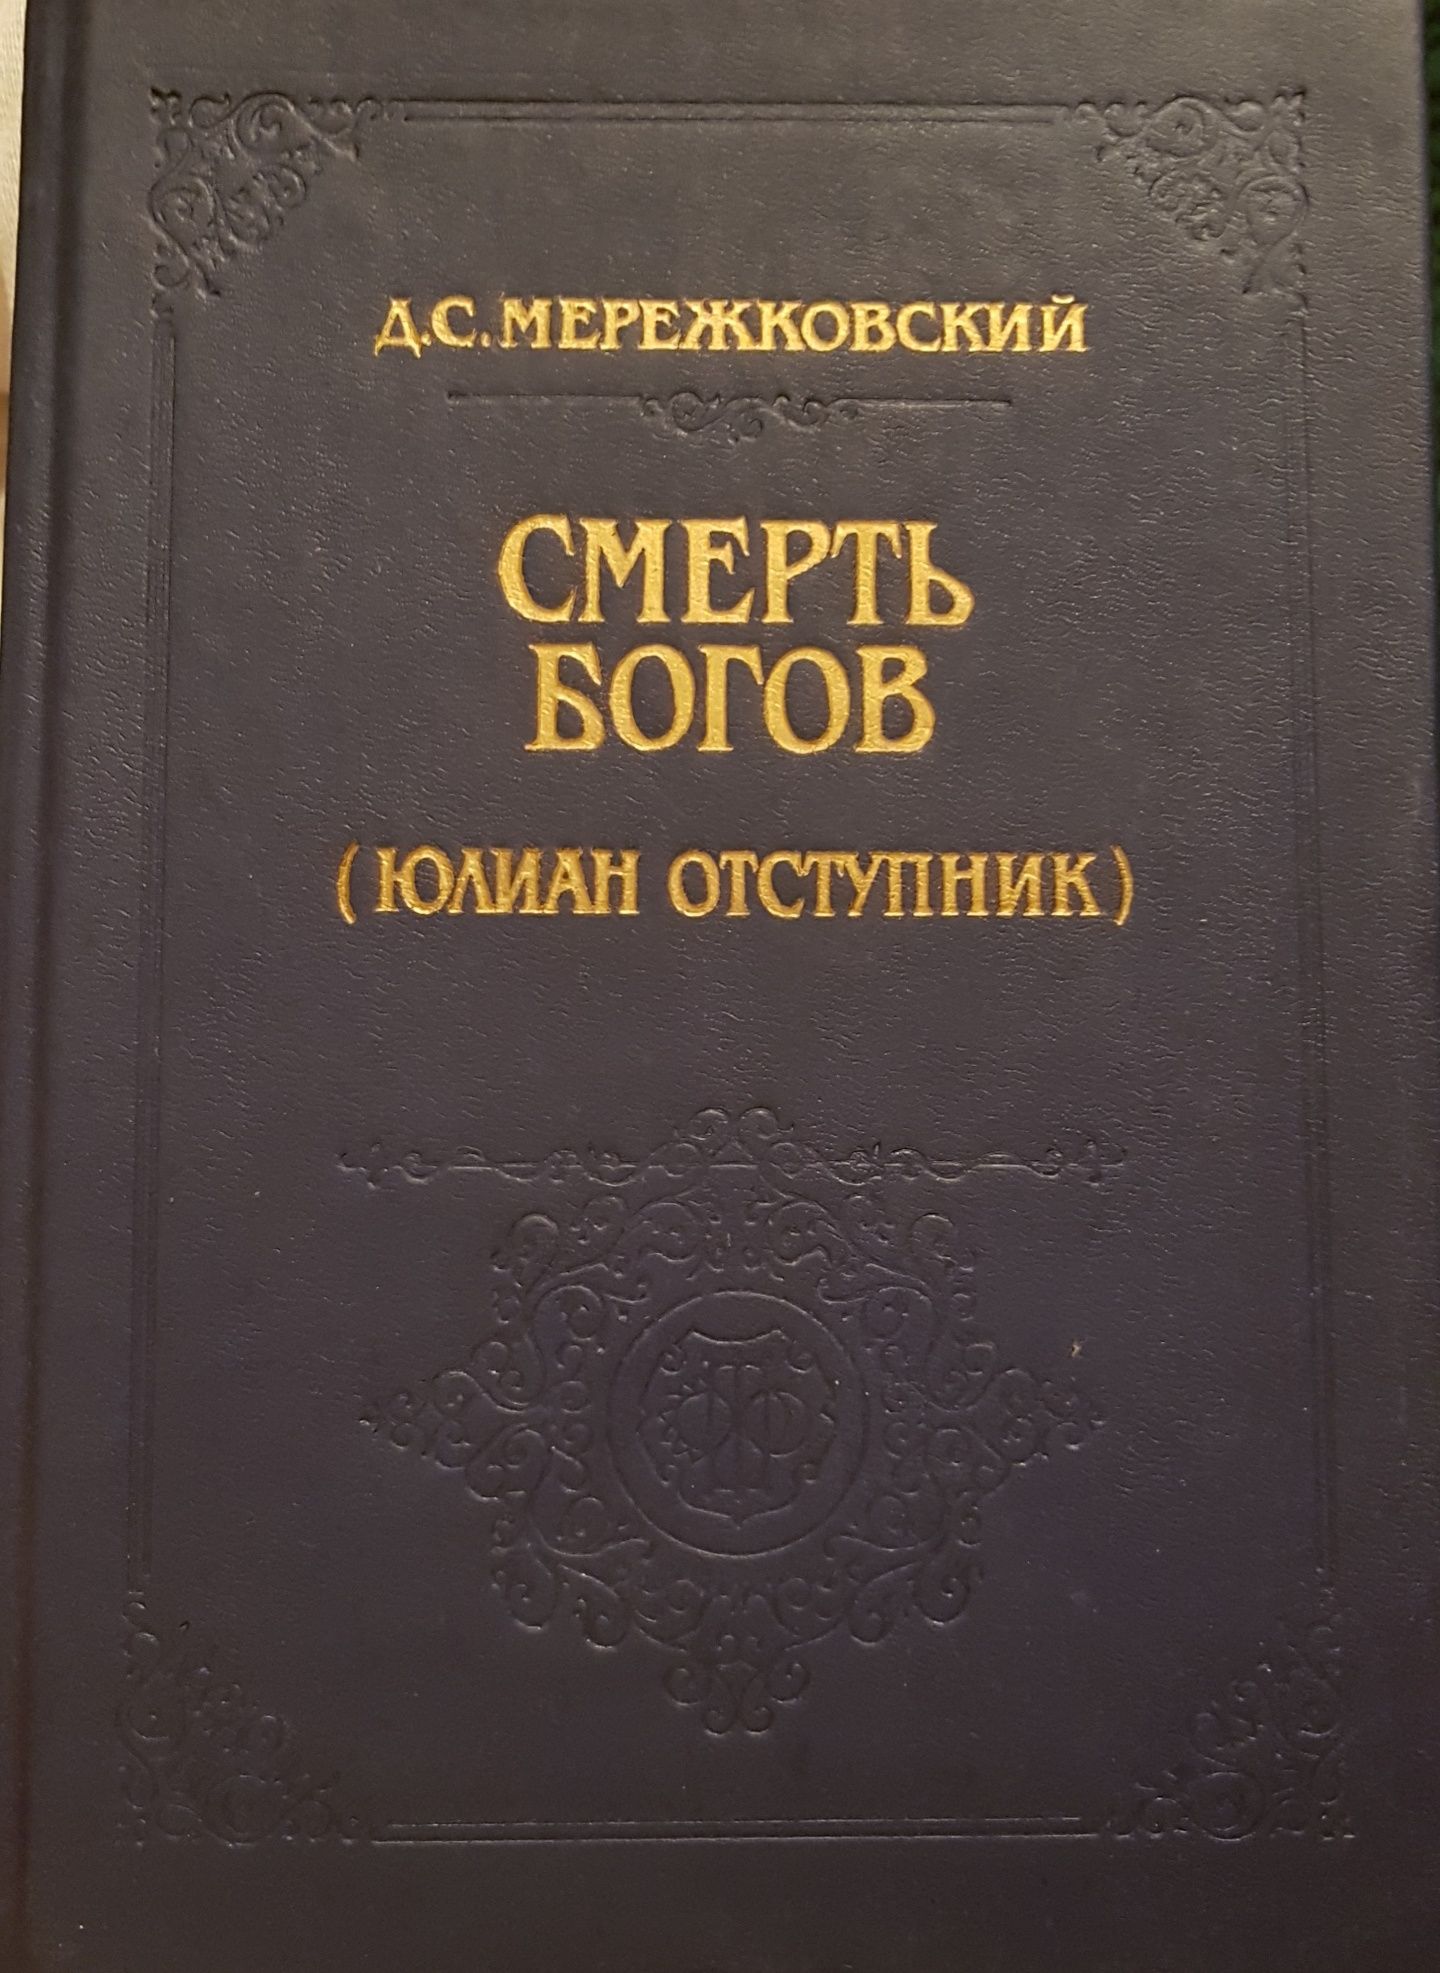 Книга Мережковский "Смерть богов"